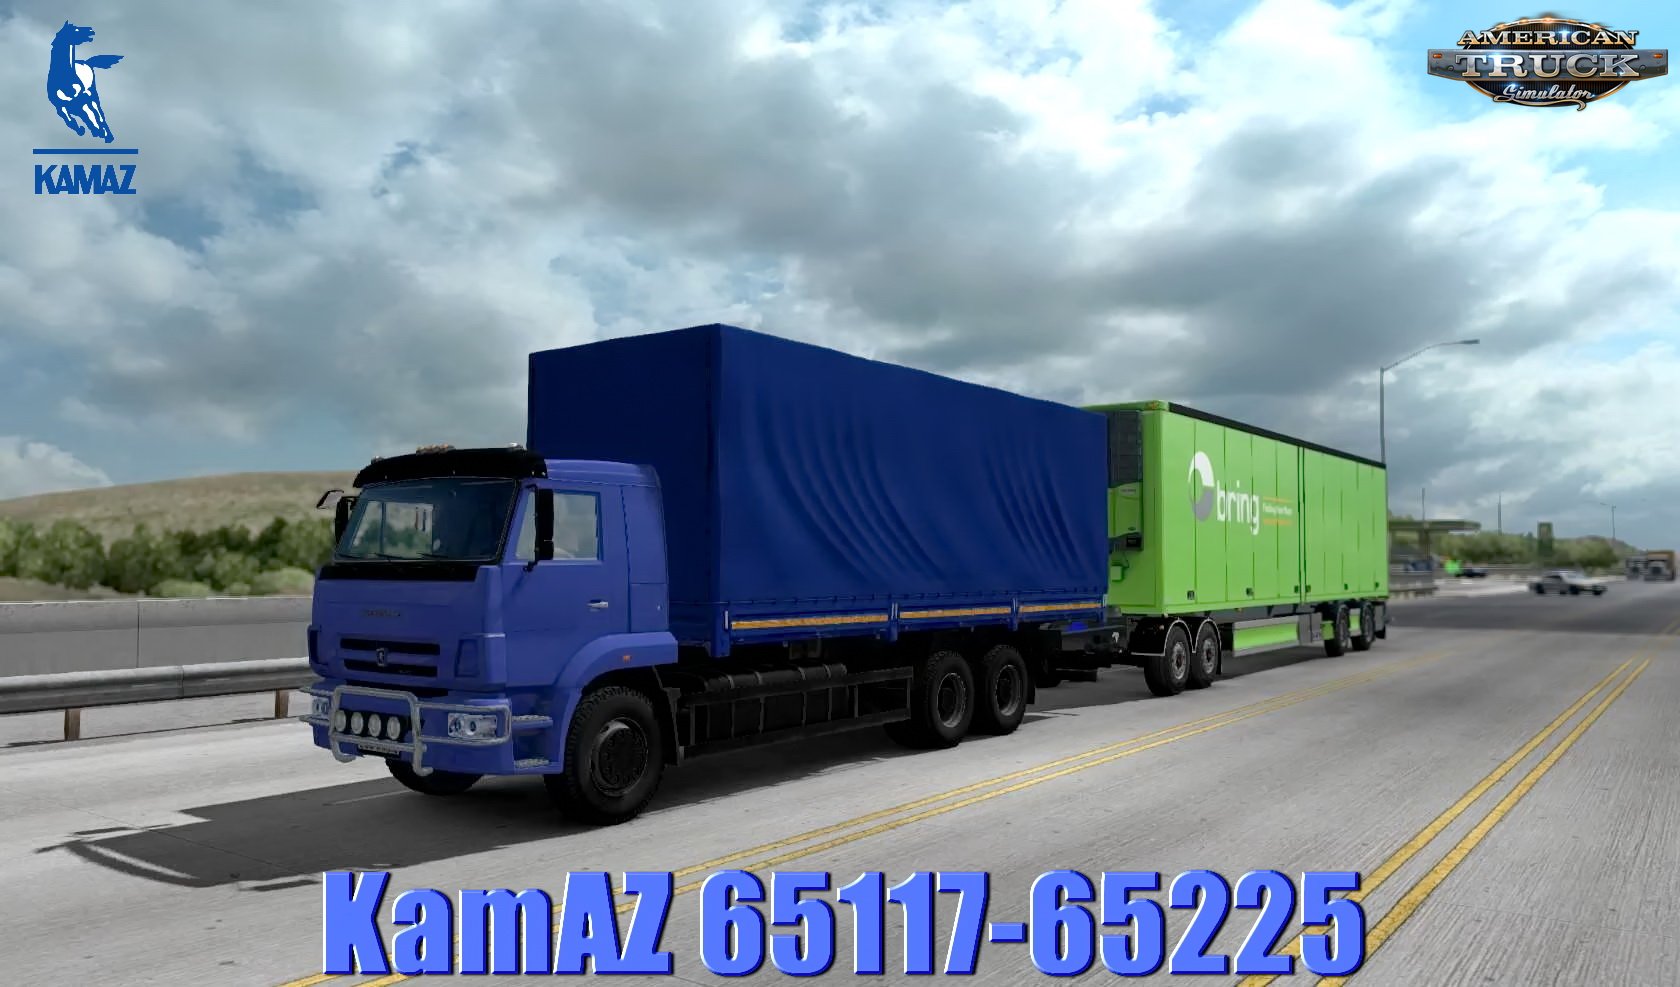 KamAZ 65117-65225 + BDF Trailer v2.0 (1.32.x)